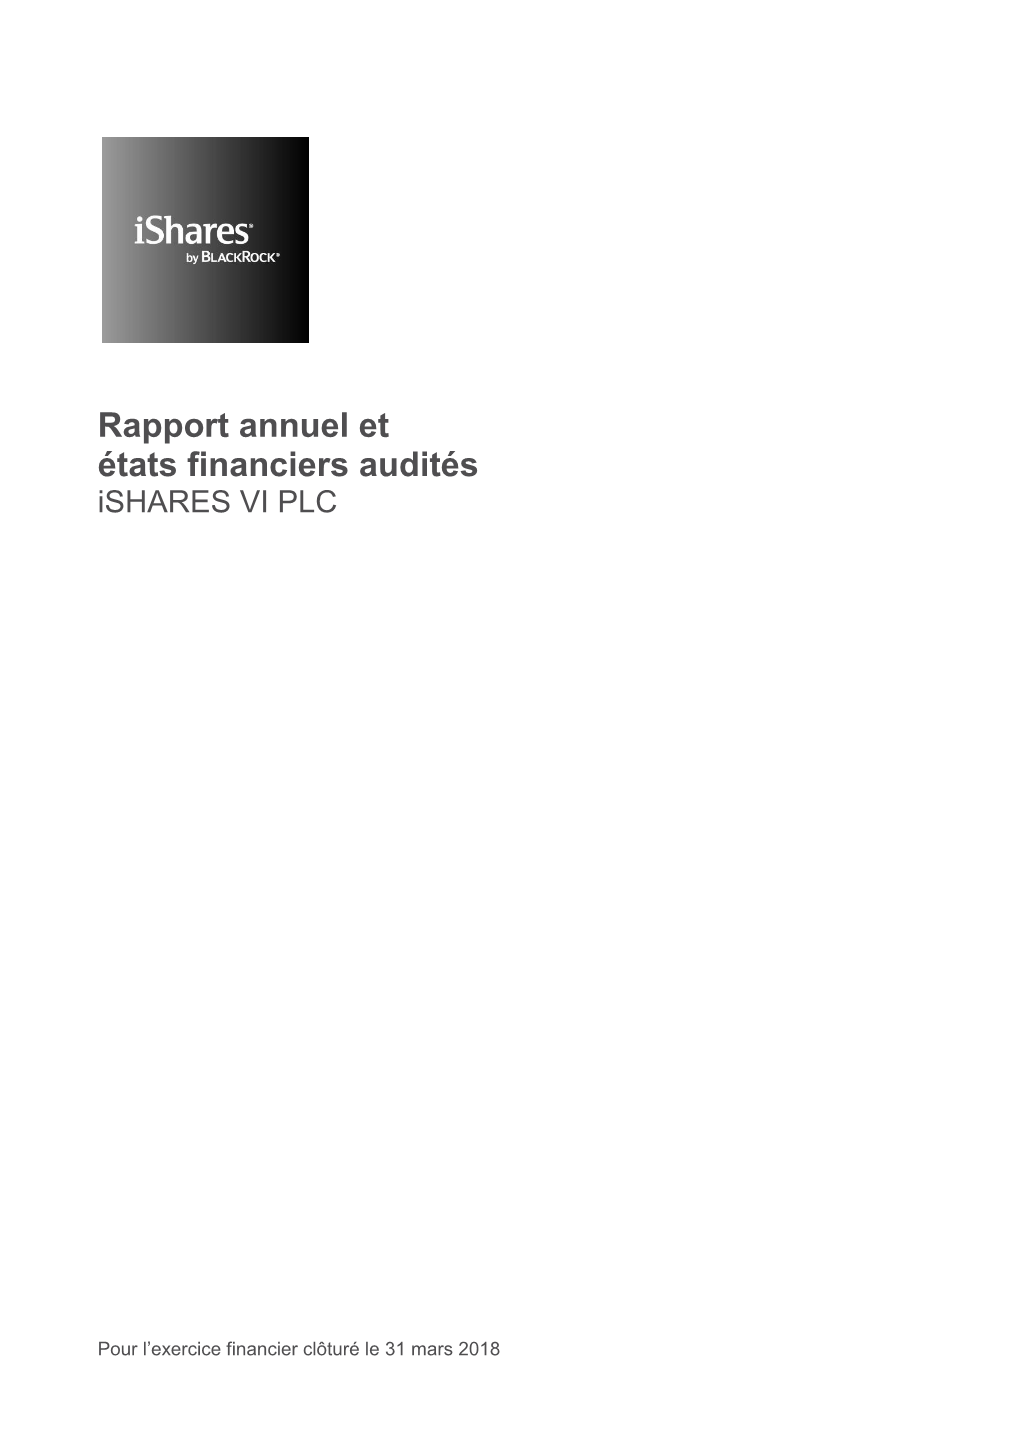 Ishares VI Plc Rapport Annuel Et États Financiers 2018